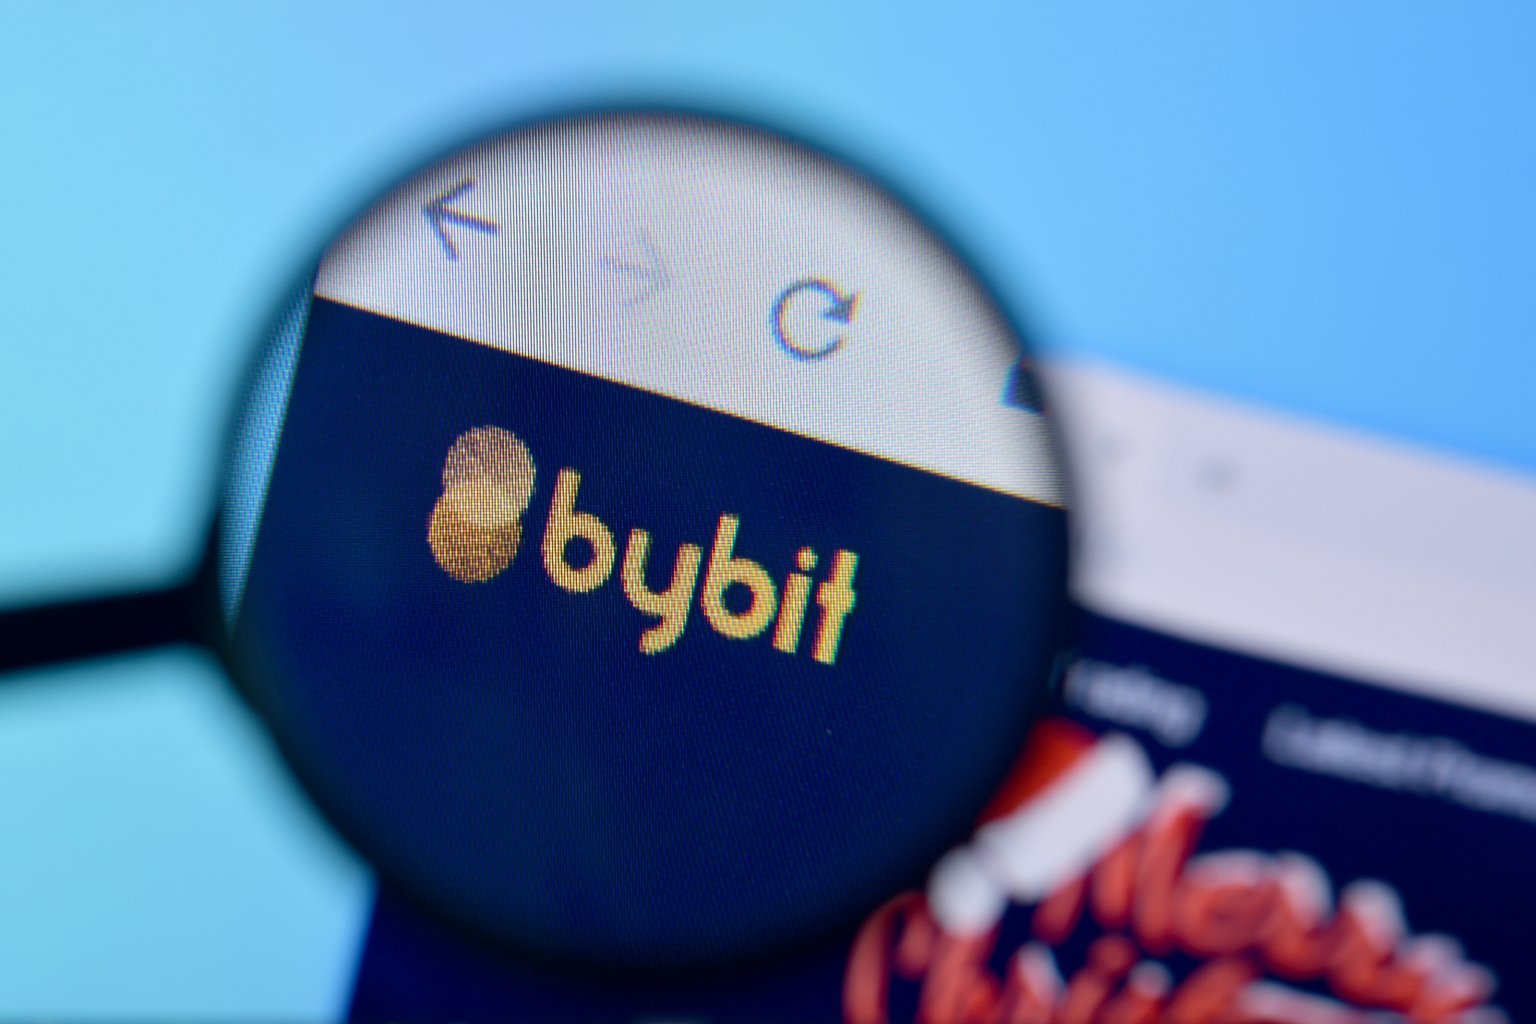 Bybit exchange platform for cryptocurrencies ...